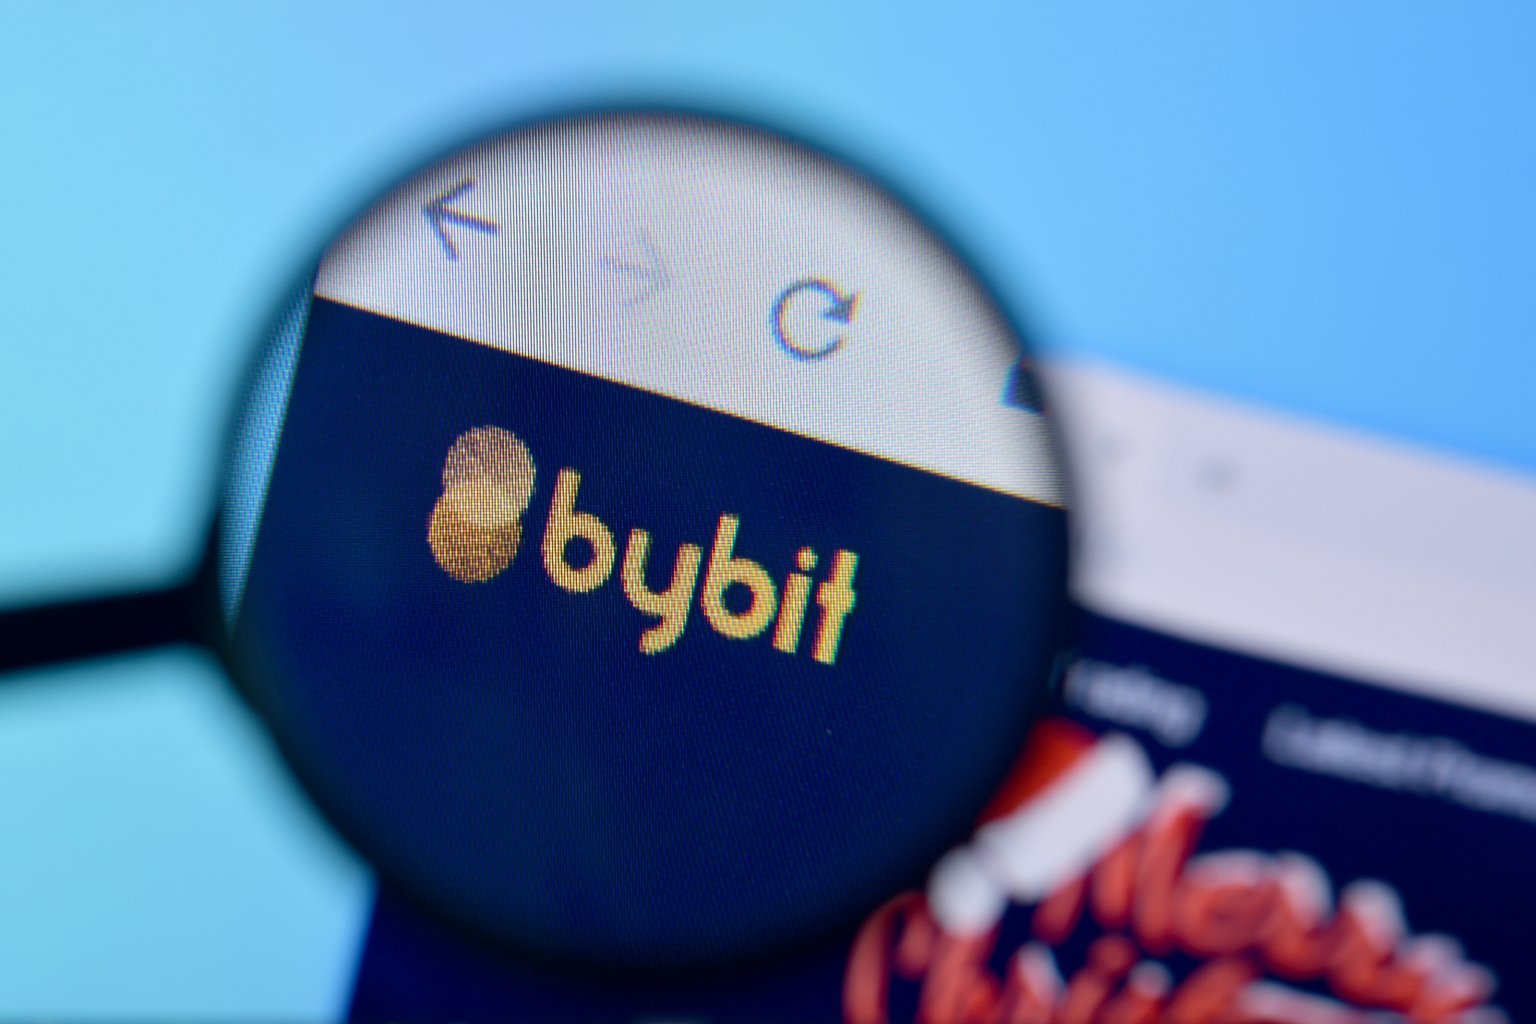 Bybit exchange platform for cryptocurrencies ...